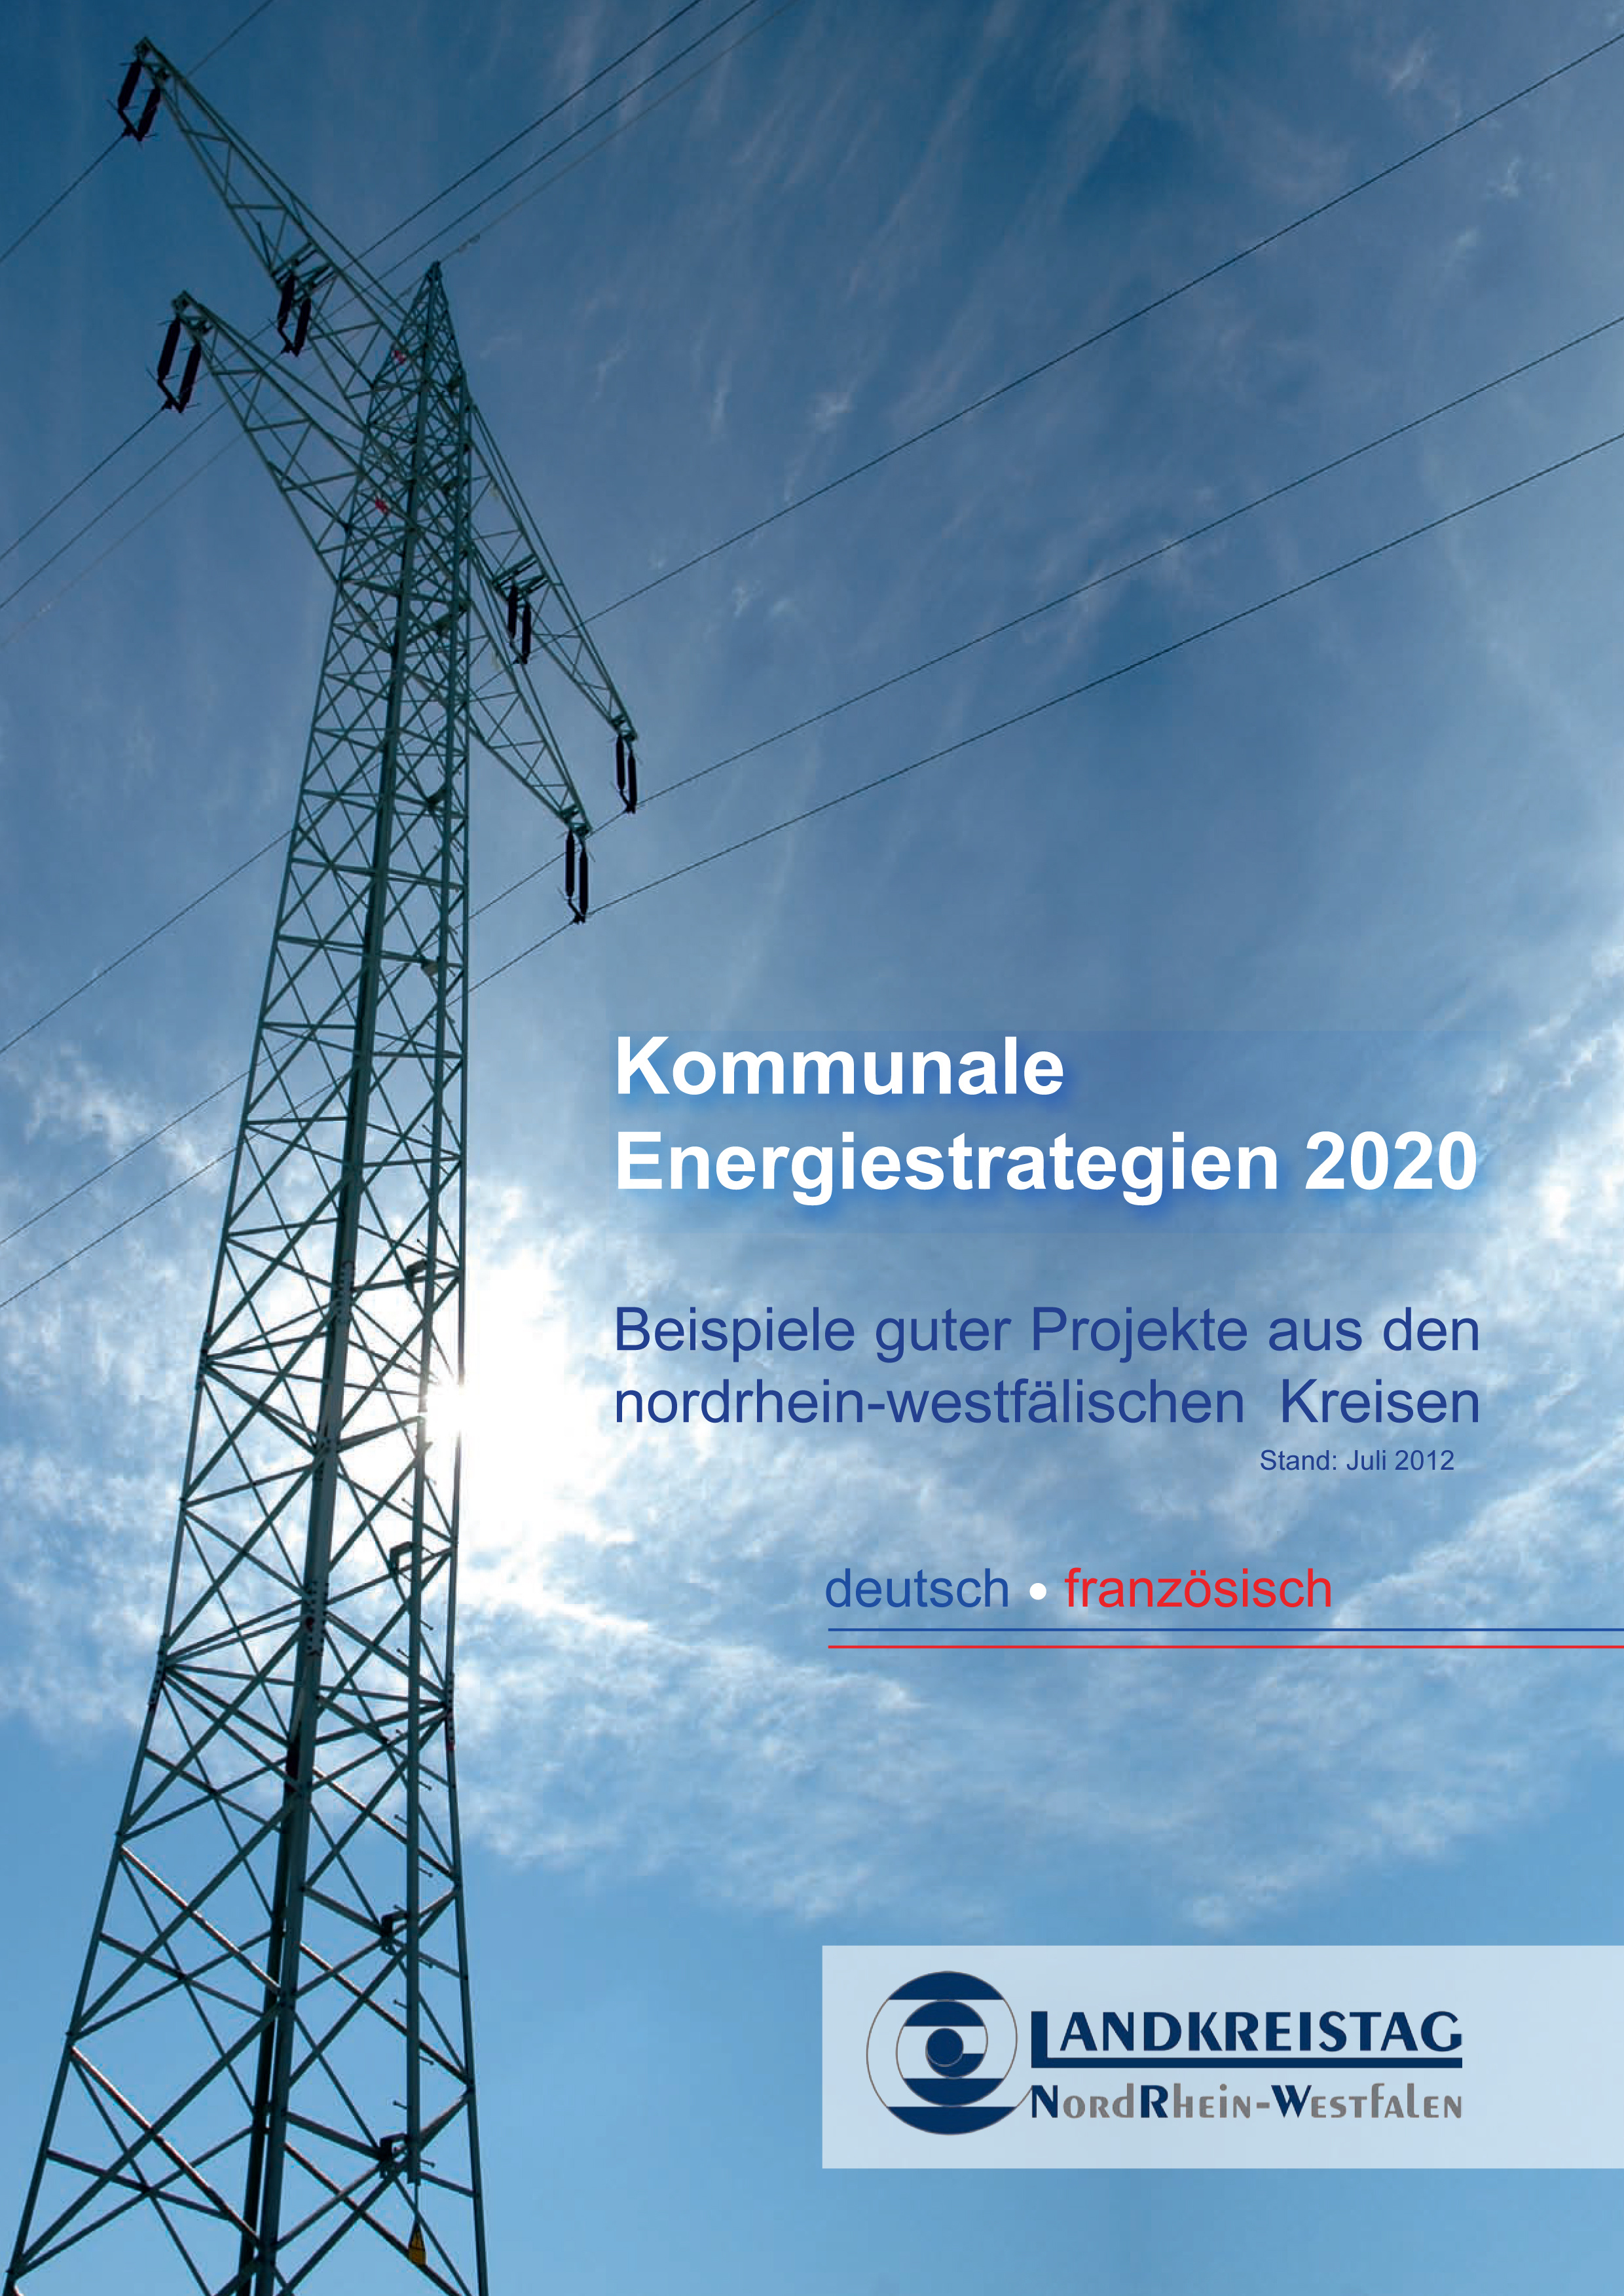 Broschüre Kommunale Energiestrategien 2020 deutsch französisch-1.jpg